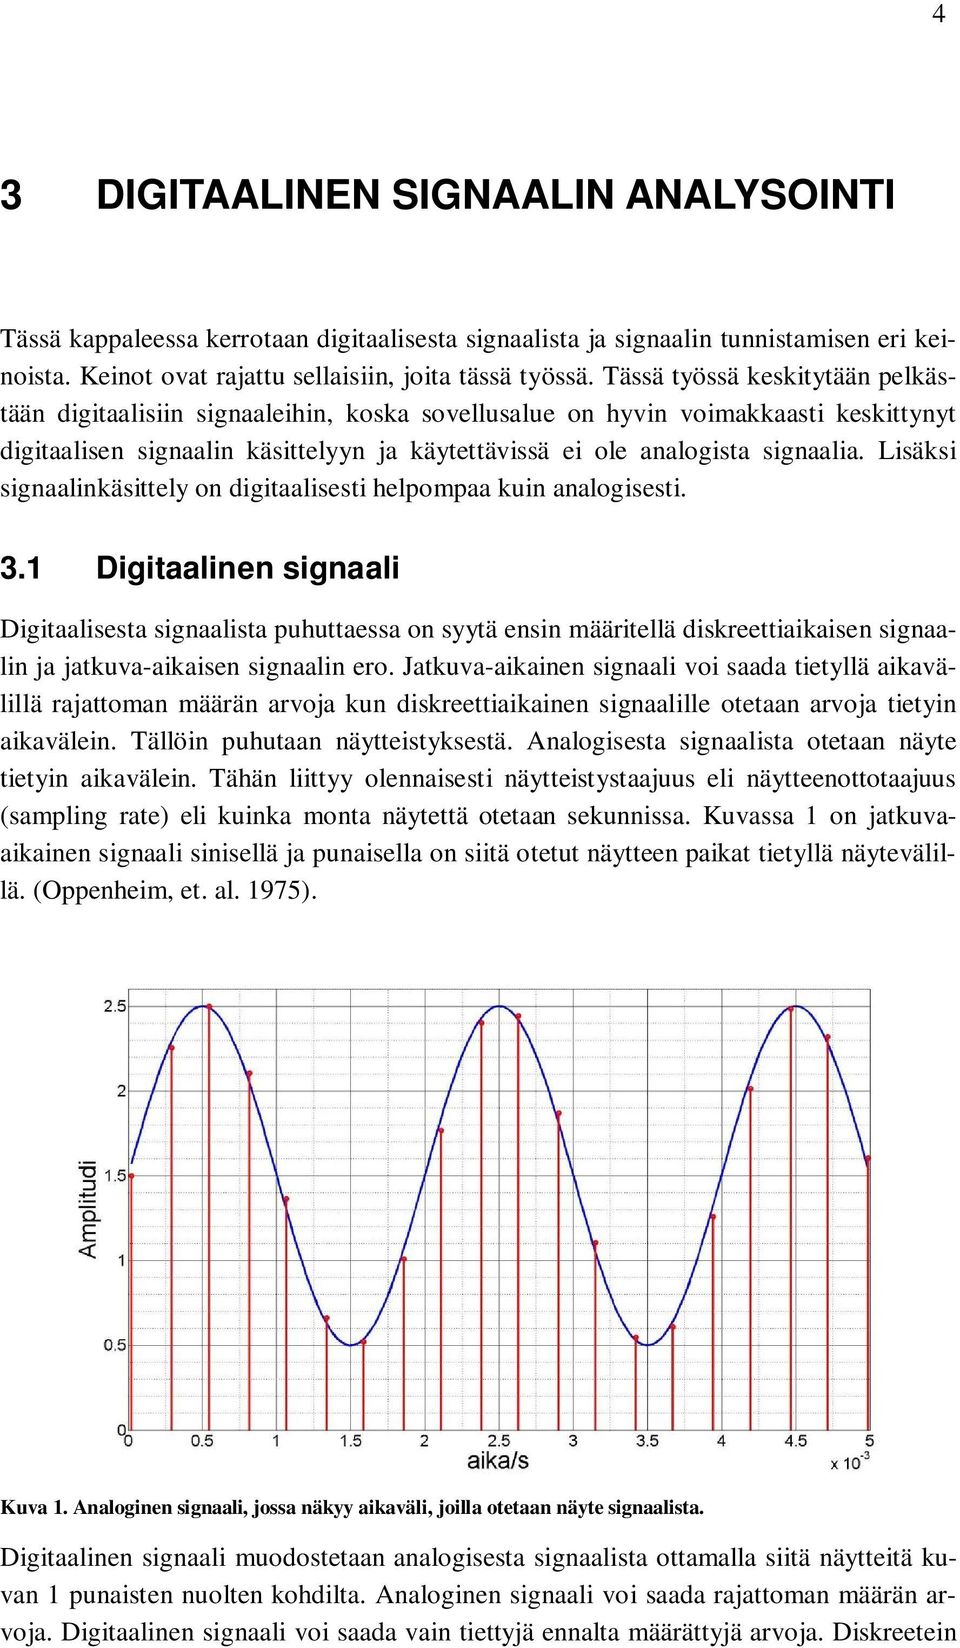 Lisäksi signaalinkäsittely on digitaalisesti helpompaa kuin analogisesti. 3.